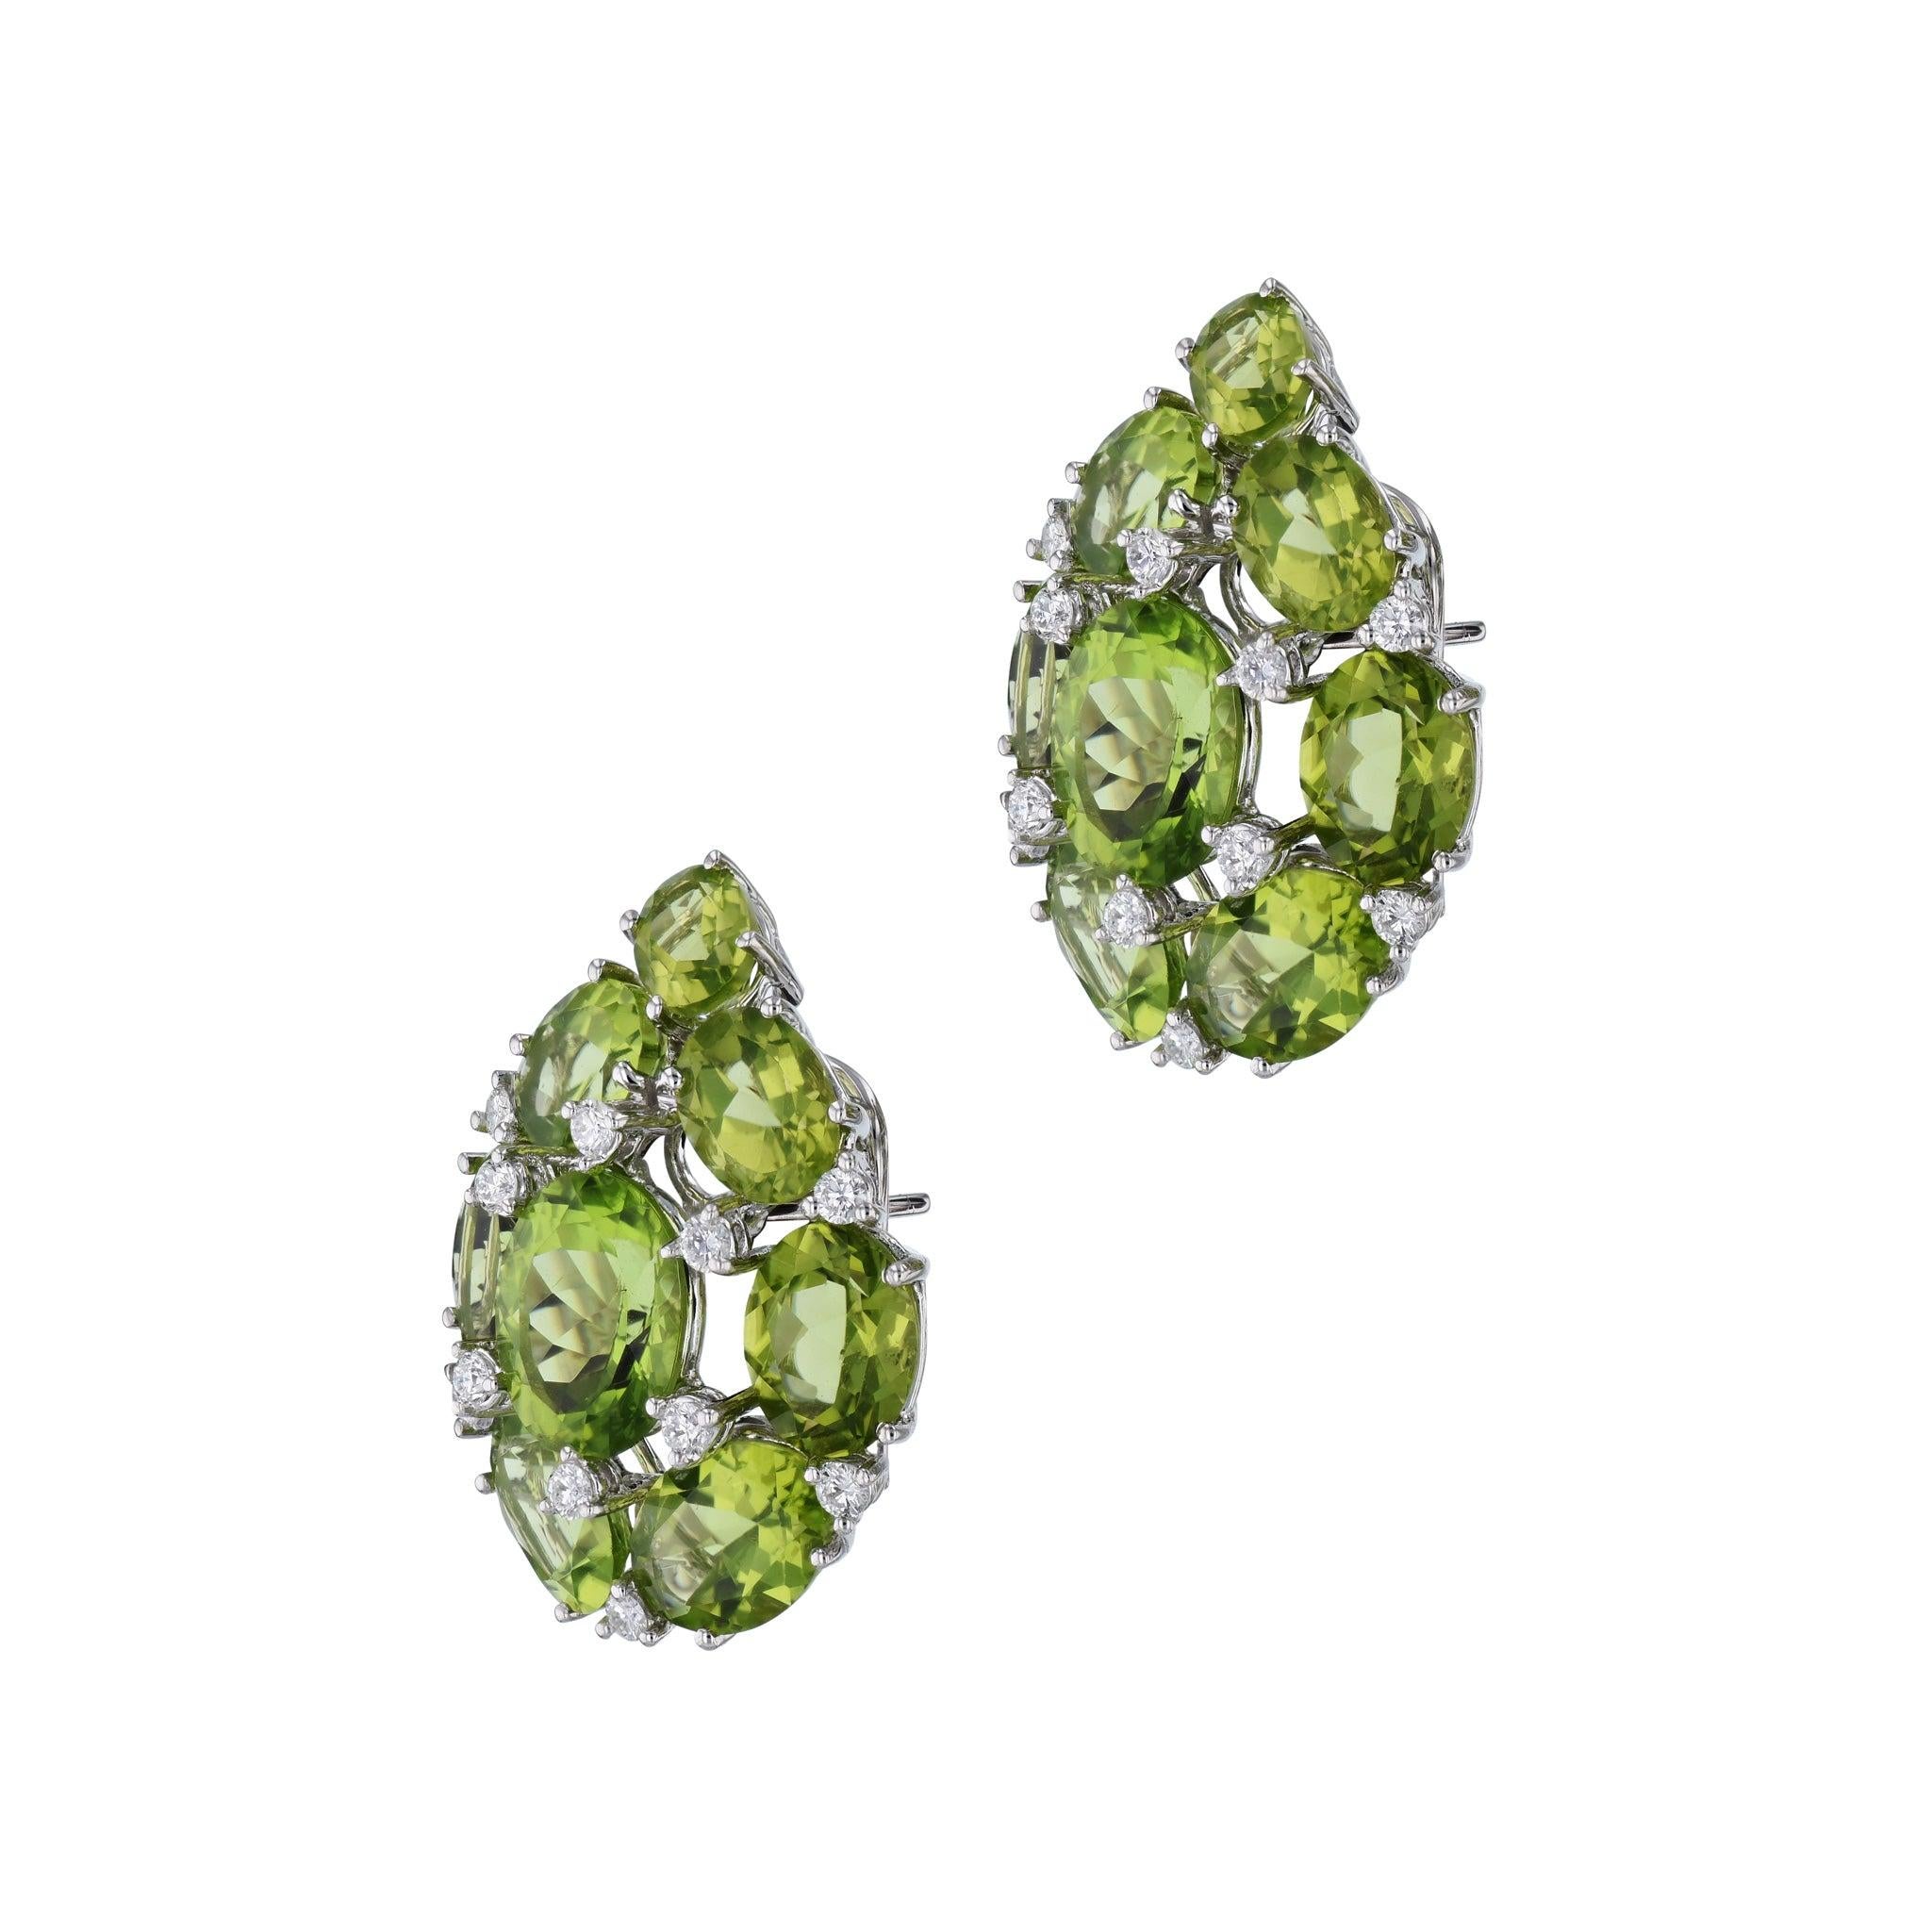 Diese prächtigen Peridot- und Diamant-Cluster-Ohrringe werden Ihre Ohren in unvergleichlicher Schönheit schmücken! Jeder Ohrring ist mit 8 Peridot-Steinen und Diamanten in Weißgold gefasst. Drücken Sie Ihren einzigartigen Stil und Glamour mit diesen